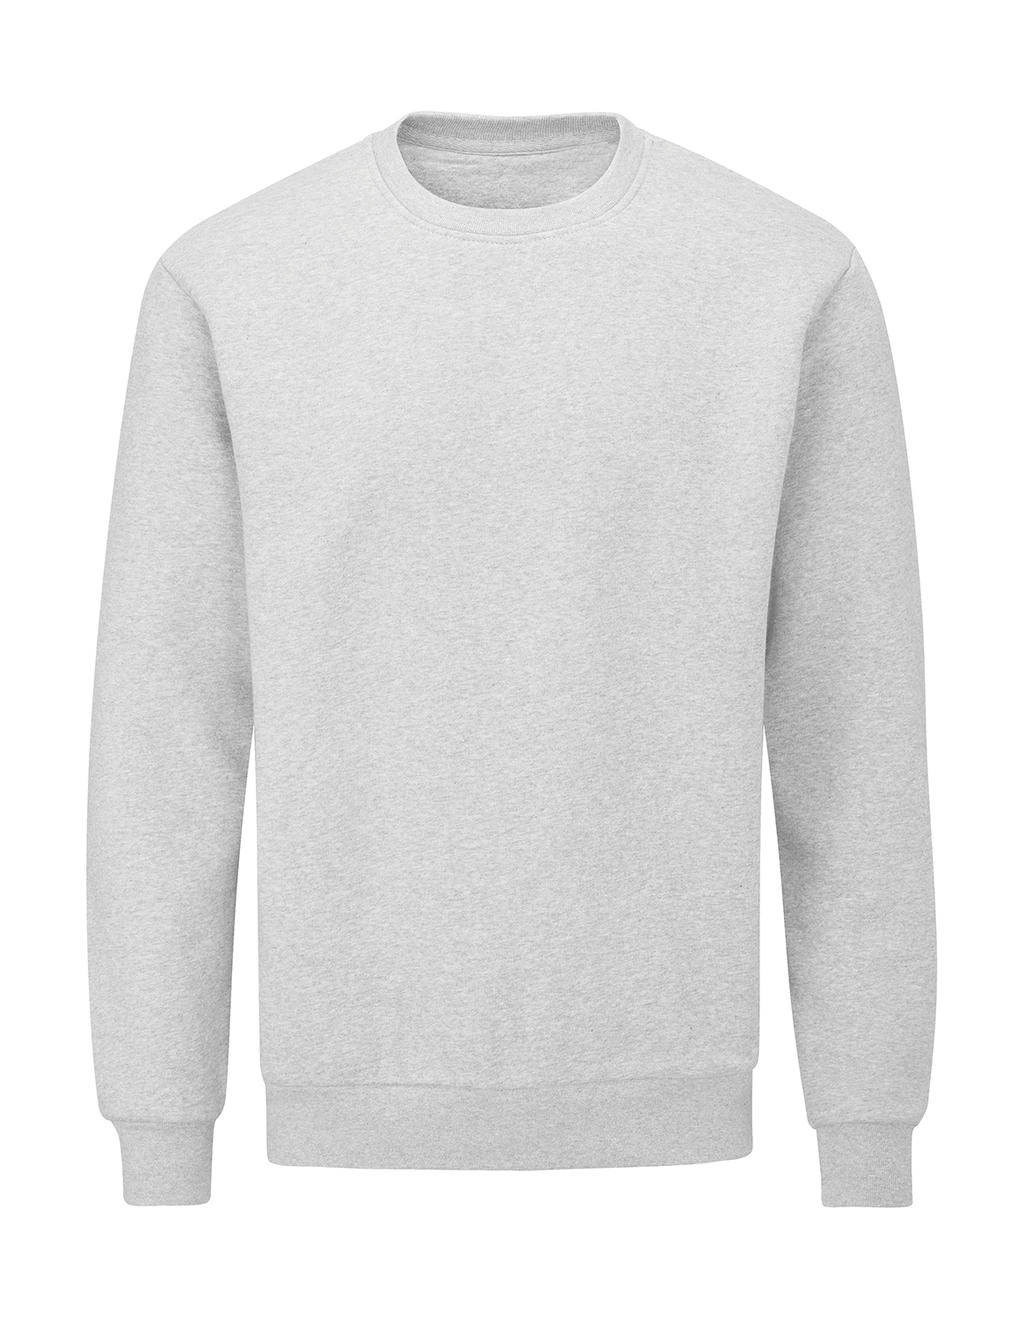 Essential Sweatshirt zum Besticken und Bedrucken in der Farbe Heather Grey Melange mit Ihren Logo, Schriftzug oder Motiv.